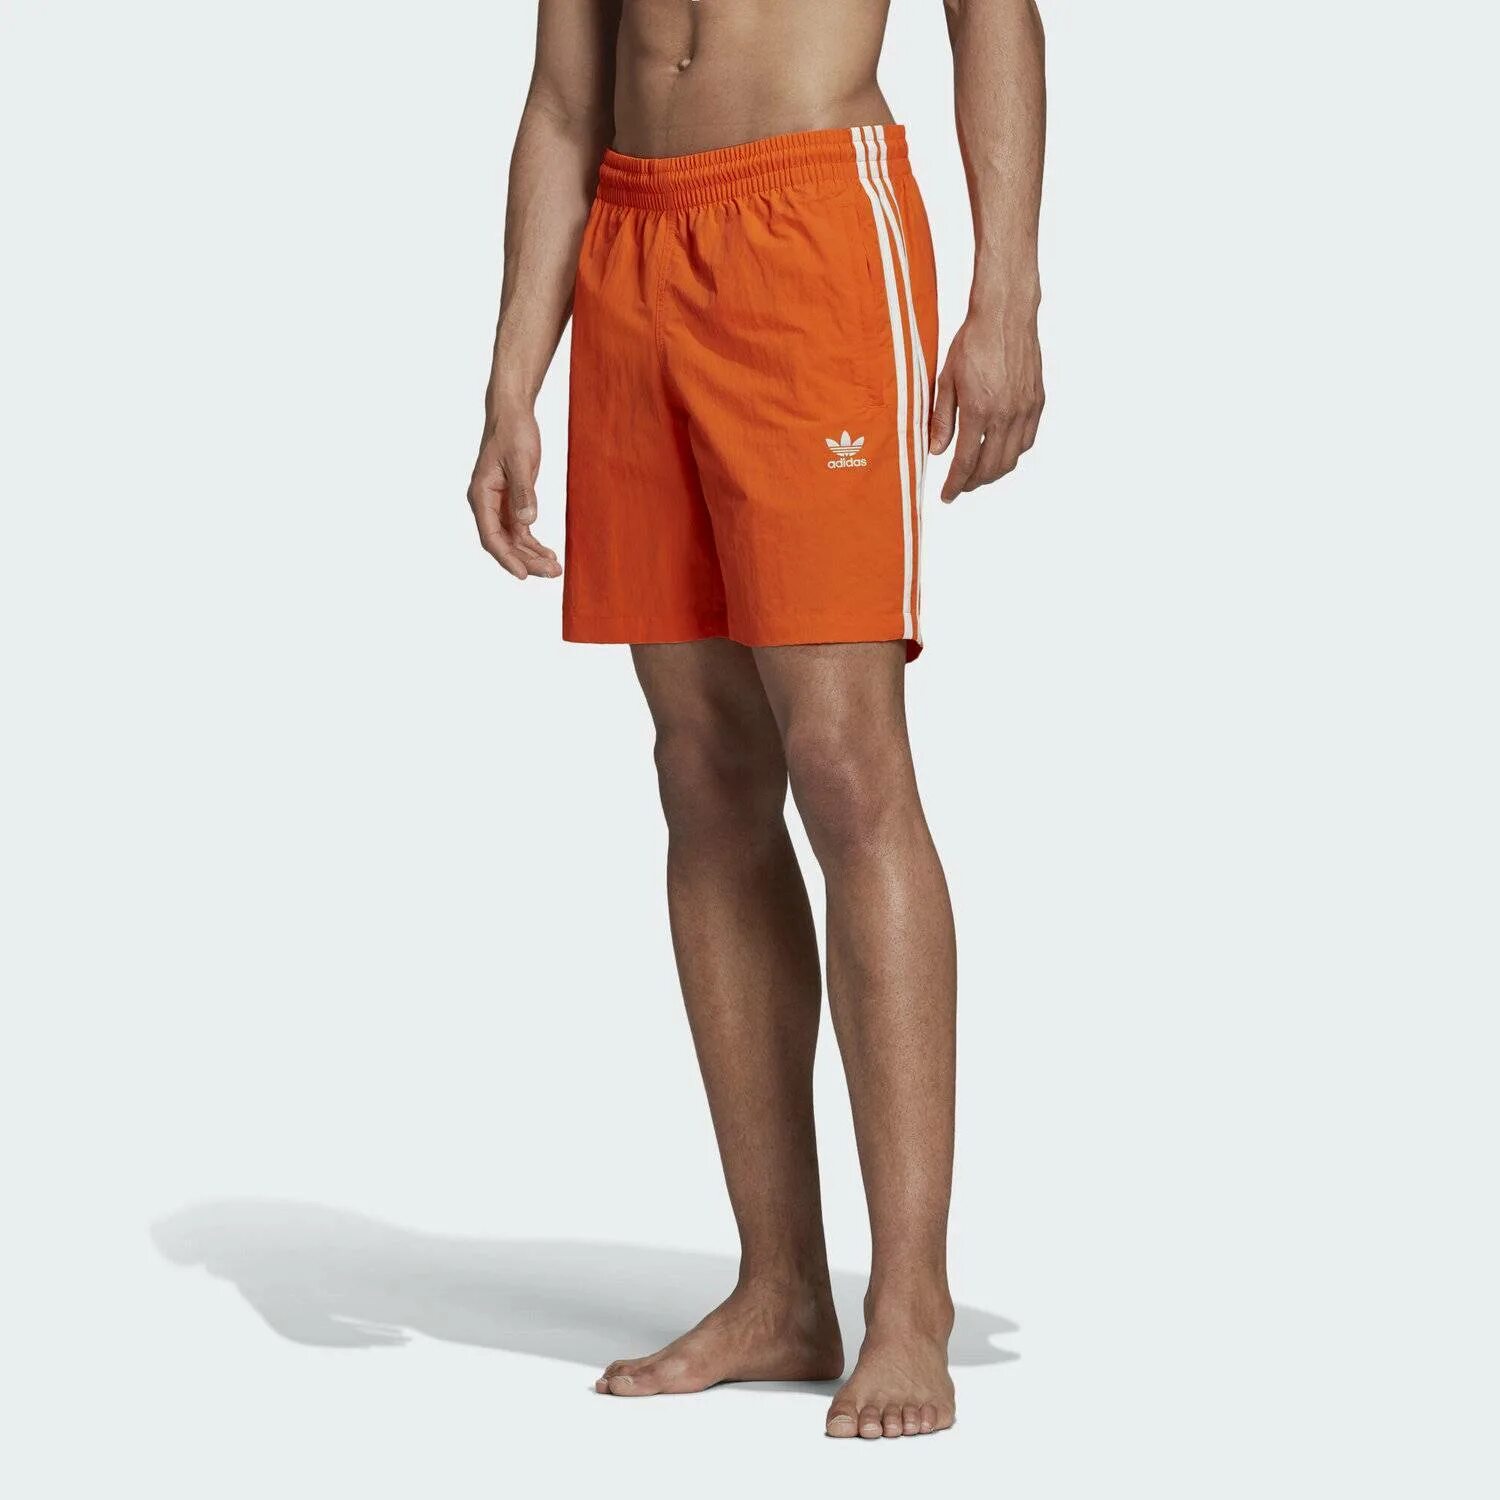 Шорты адидас оранжевые мужские. Adidas Originals 3-Stripes Swim shorts. Шорты адидас ориджинал мужские плавательные. Шорты adidas Performance Orange. Originals шорты